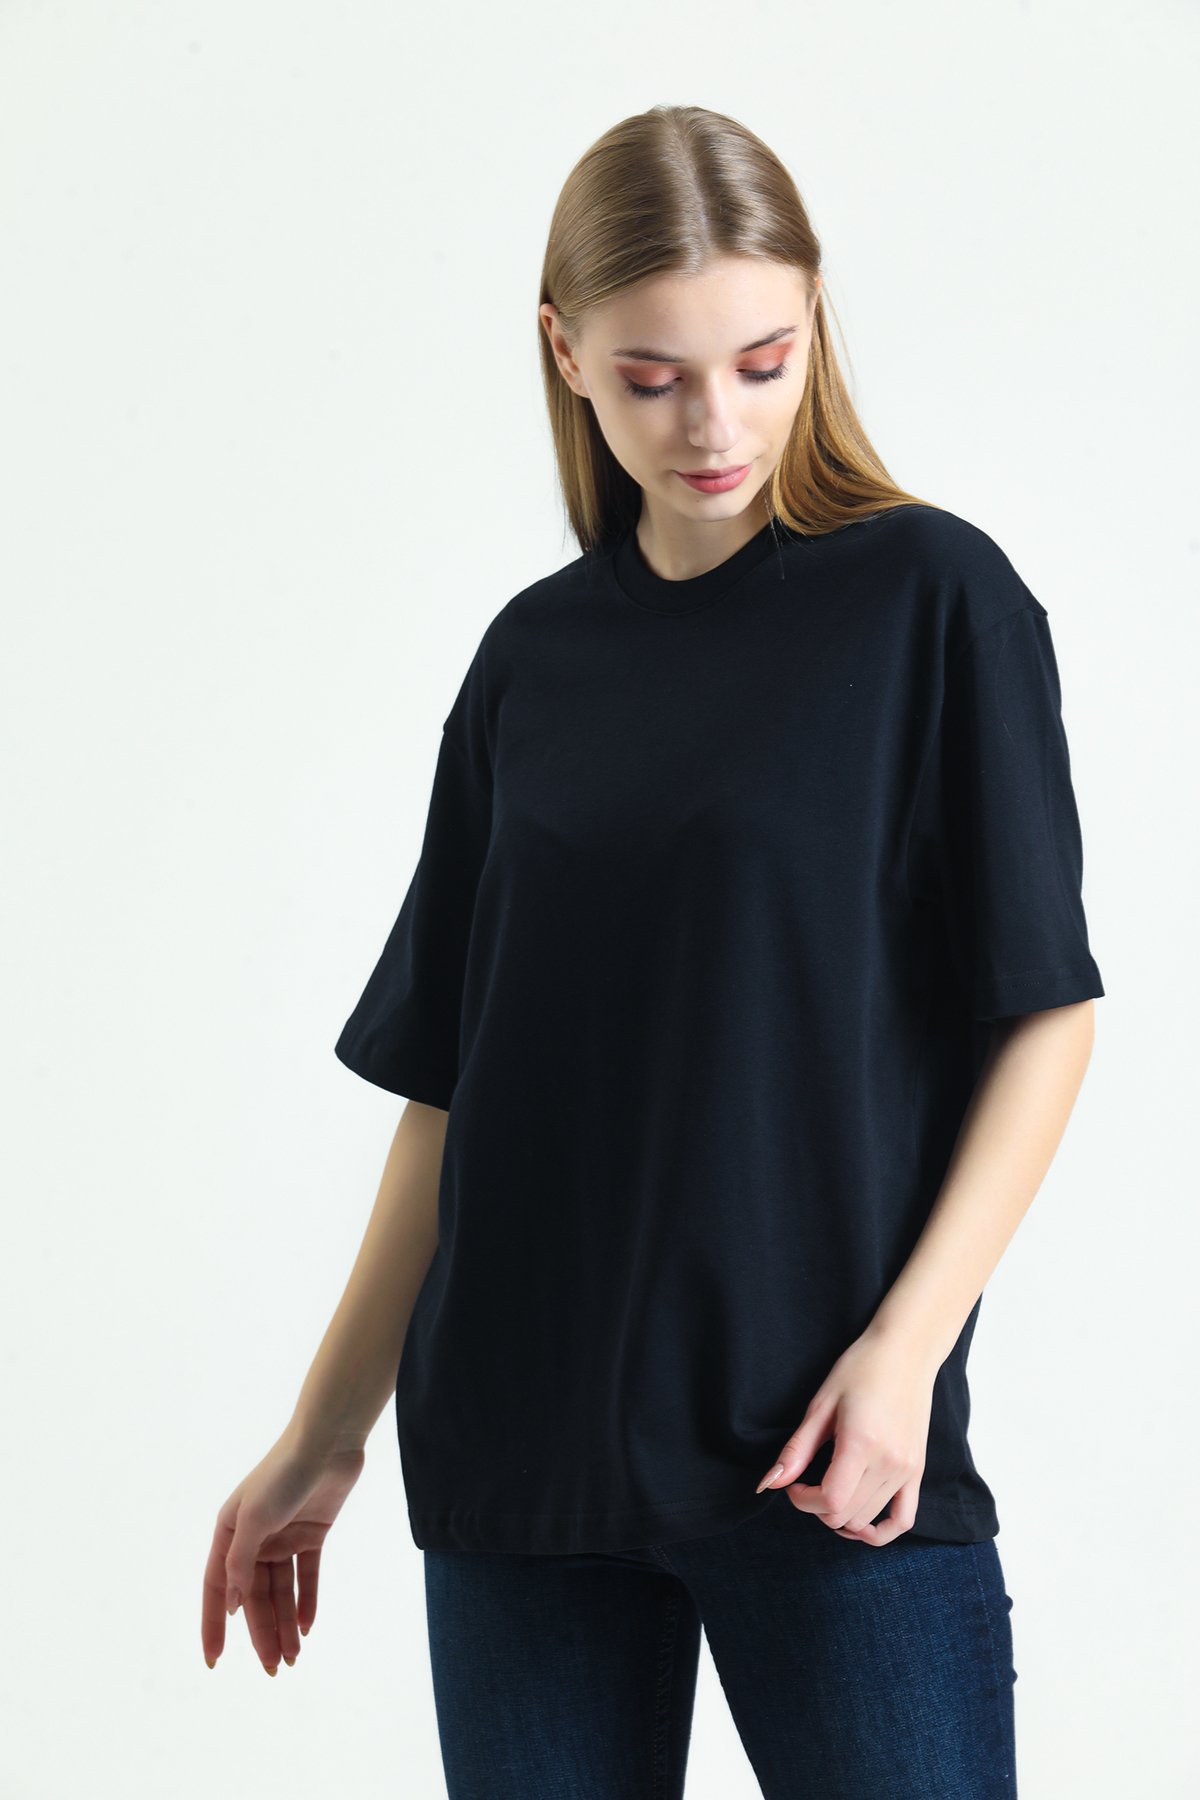 Kadın Basic T-shirt Black 100 % Pamuk 